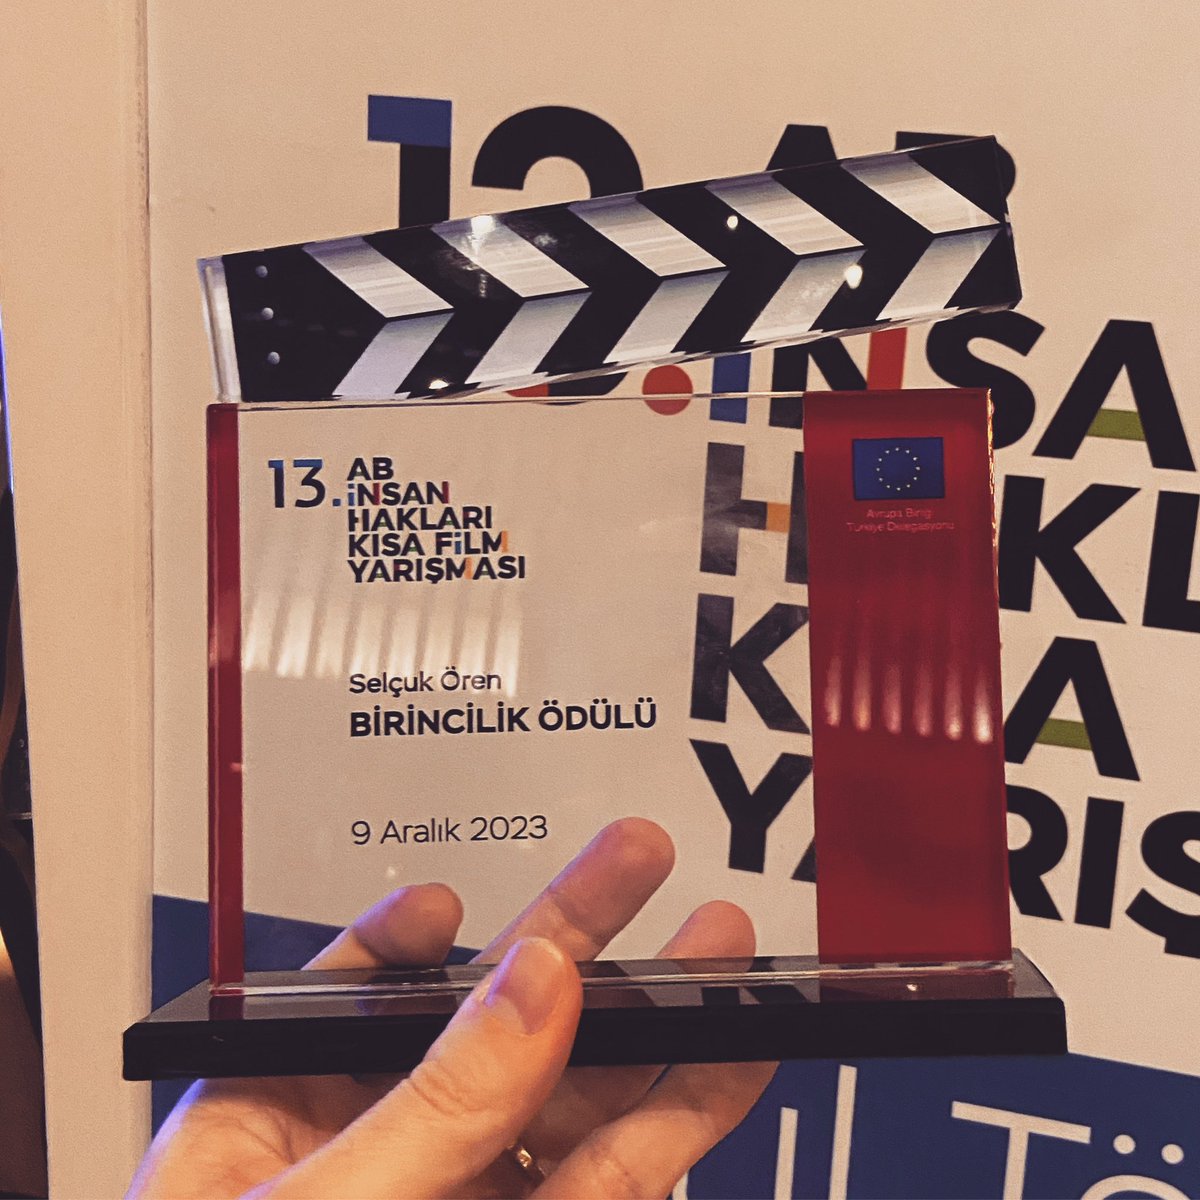 “The Maze”, 13. AB İnsan Hakları Kısa Film Yarışmasında “İnsan Hakları” kategorisinde en iyi film olarak seçildi 🥳🎉 @EUDelegationTur